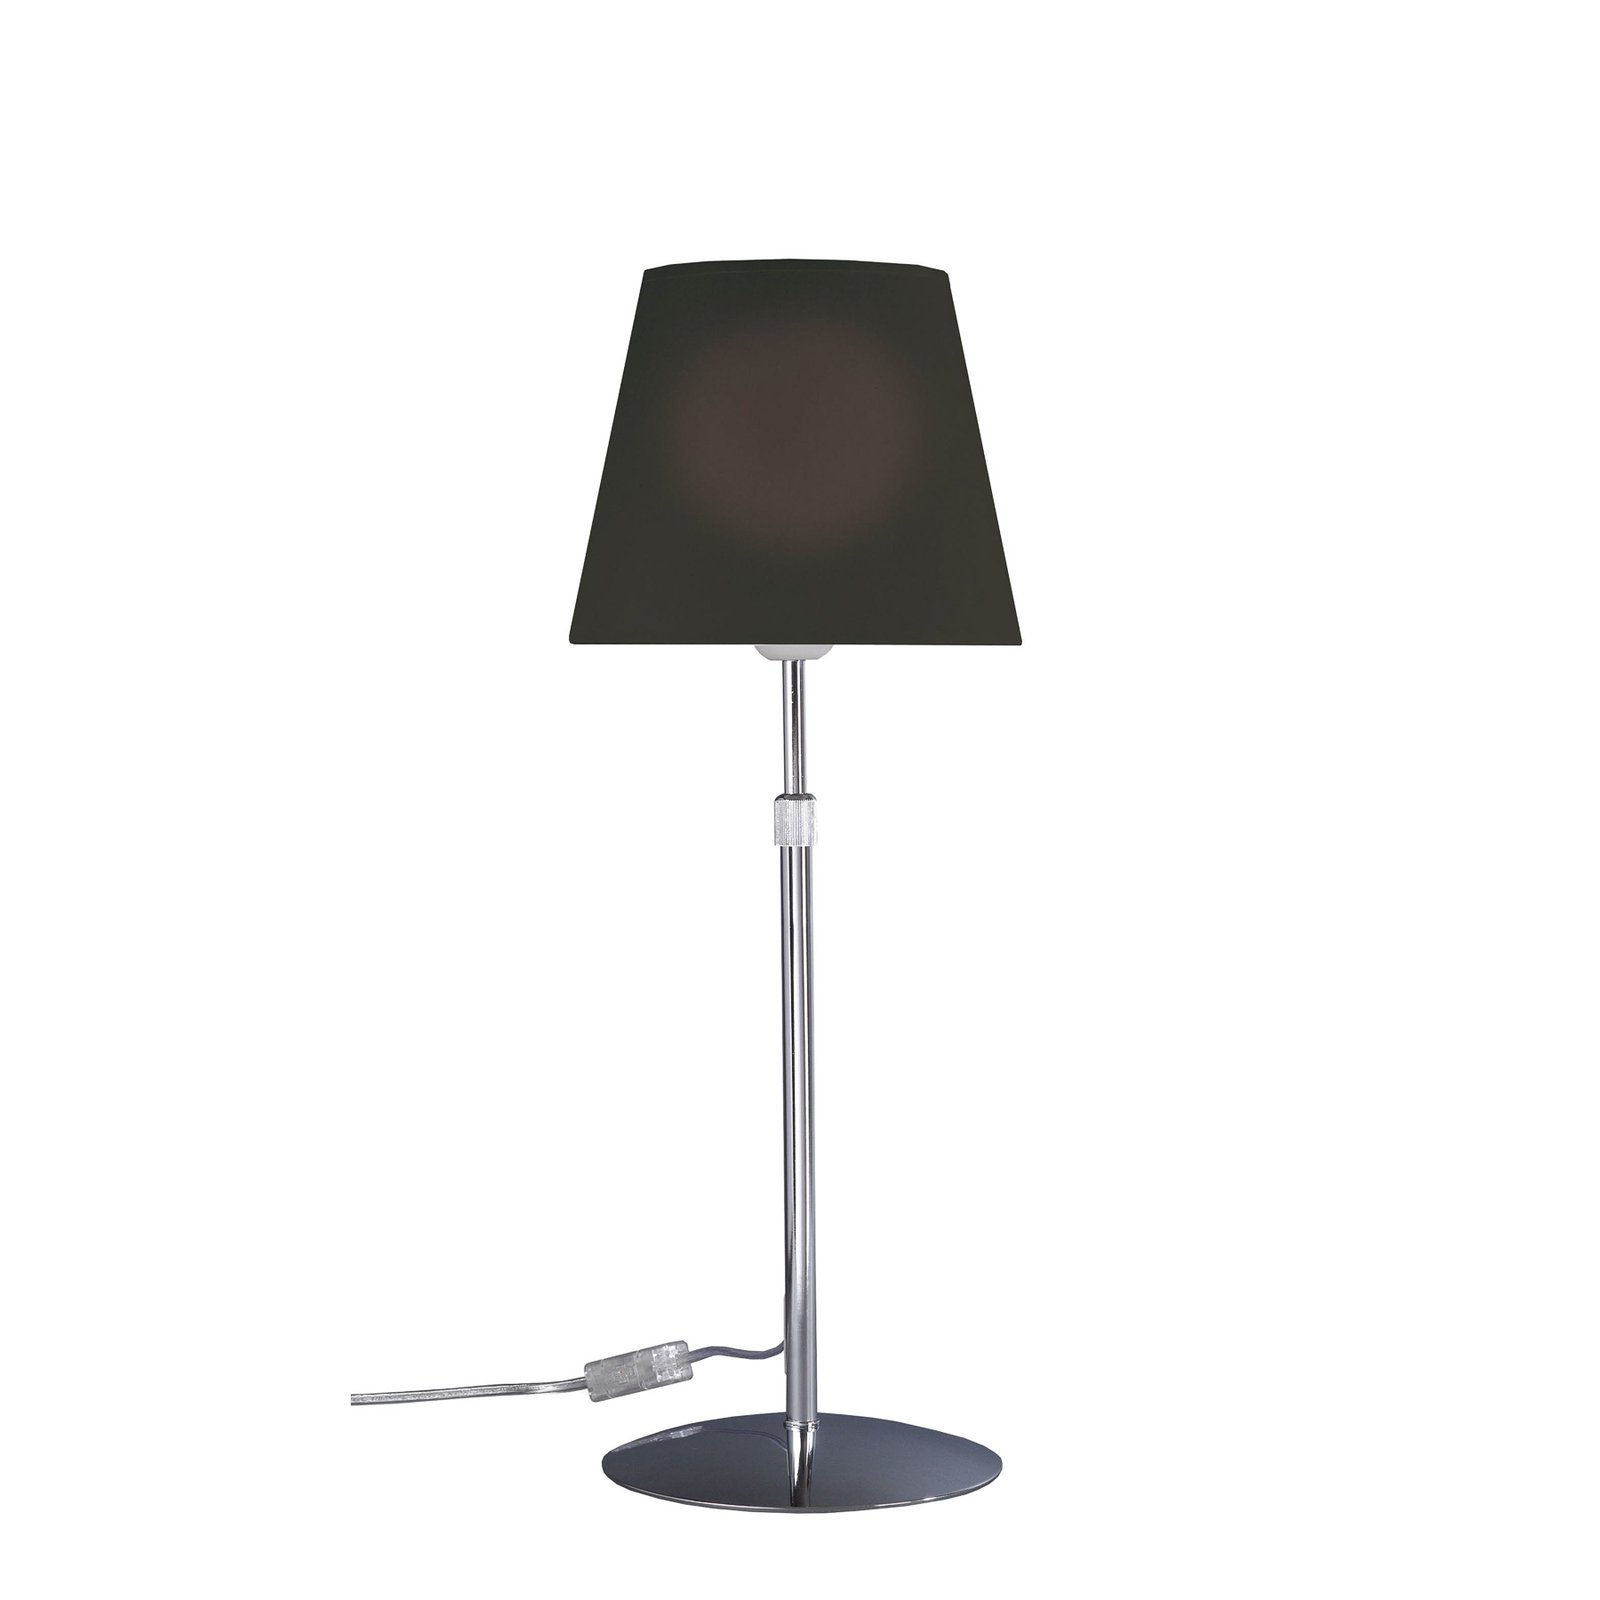 Aluminor Store bordslampa, krom/svart